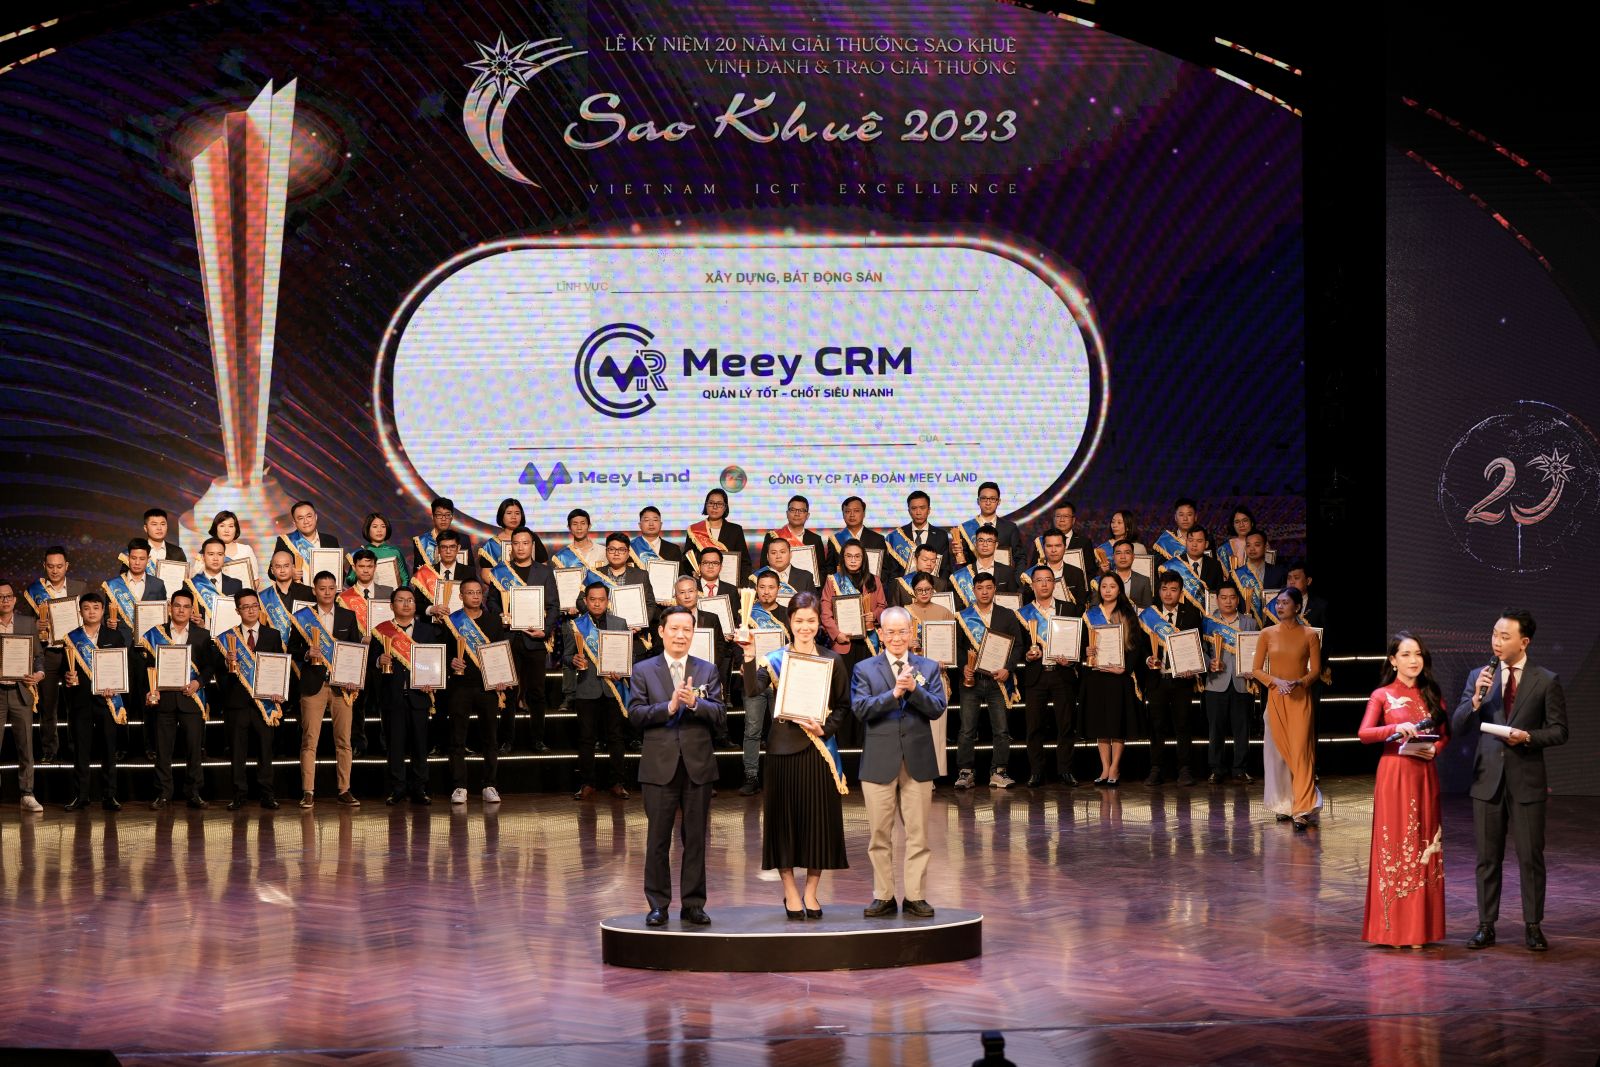 Bà Nguyễn Thị Hồng Hạnh - Trưởng phòng Chính sách sản phẩm Công ty Cổ phần Tập đoàn Meey Land đại diện nhận kỷ niệm chương tại sự kiện.